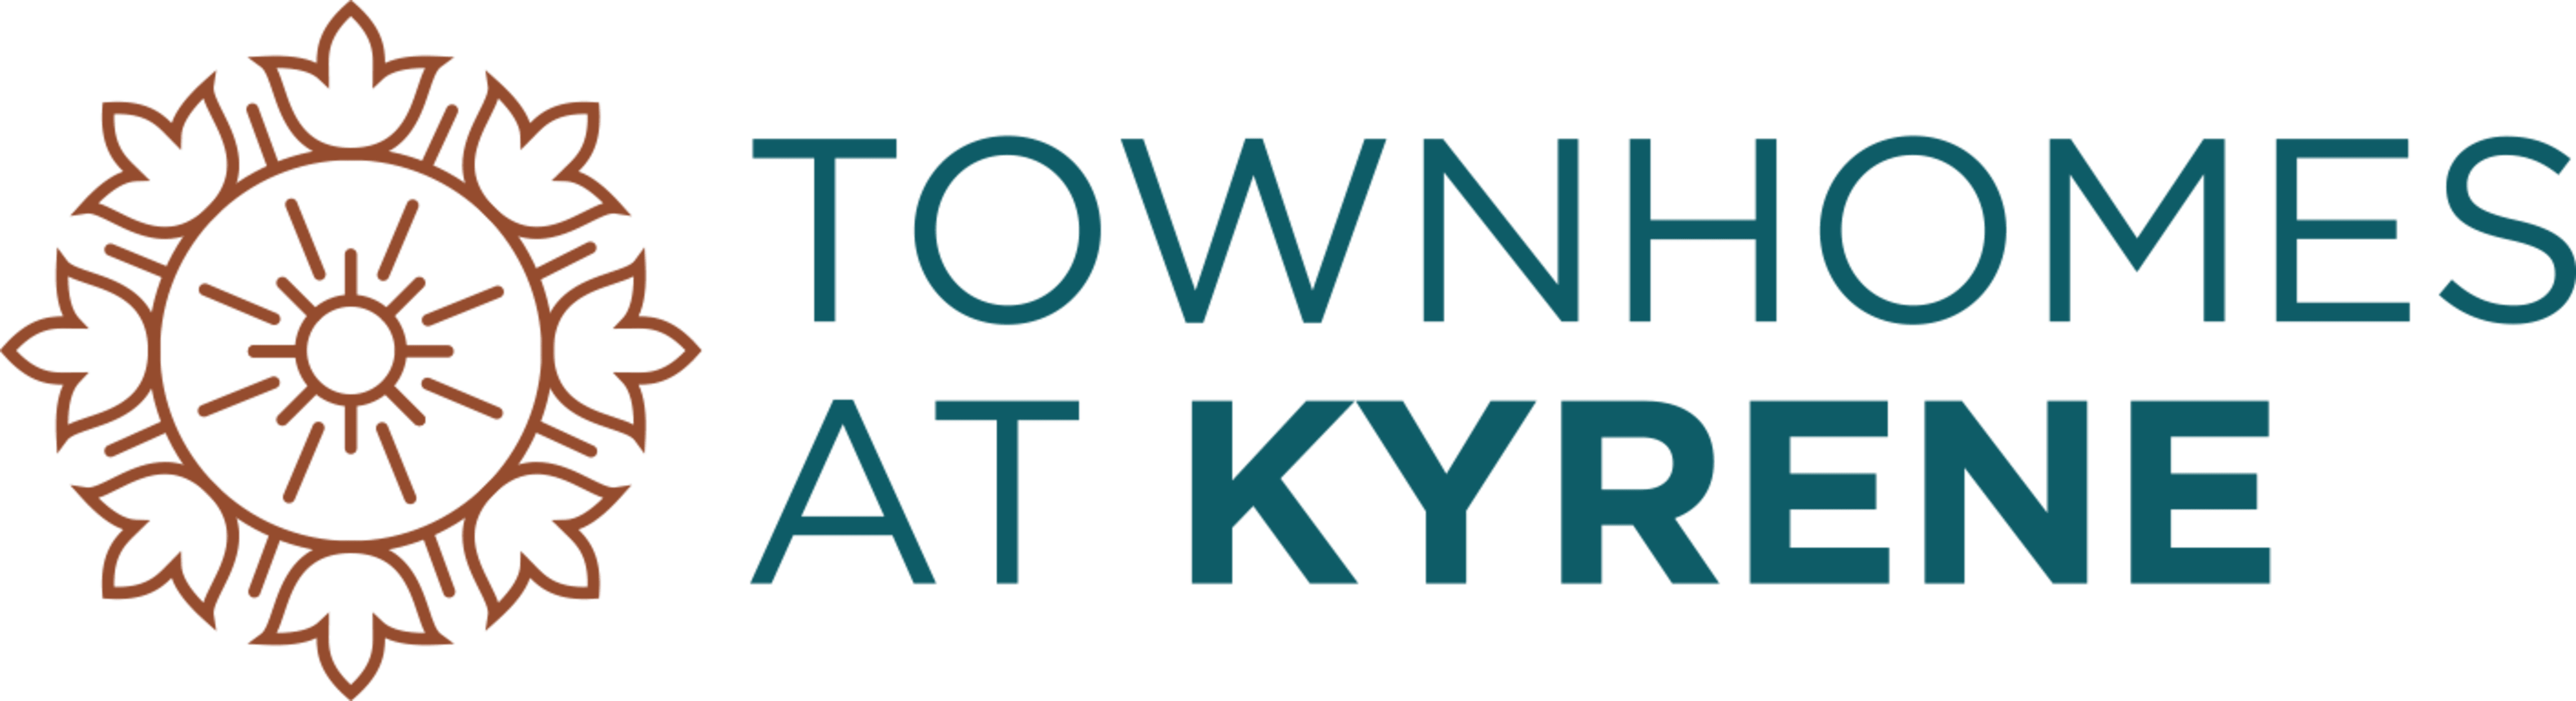 Townhomes at Kyrene